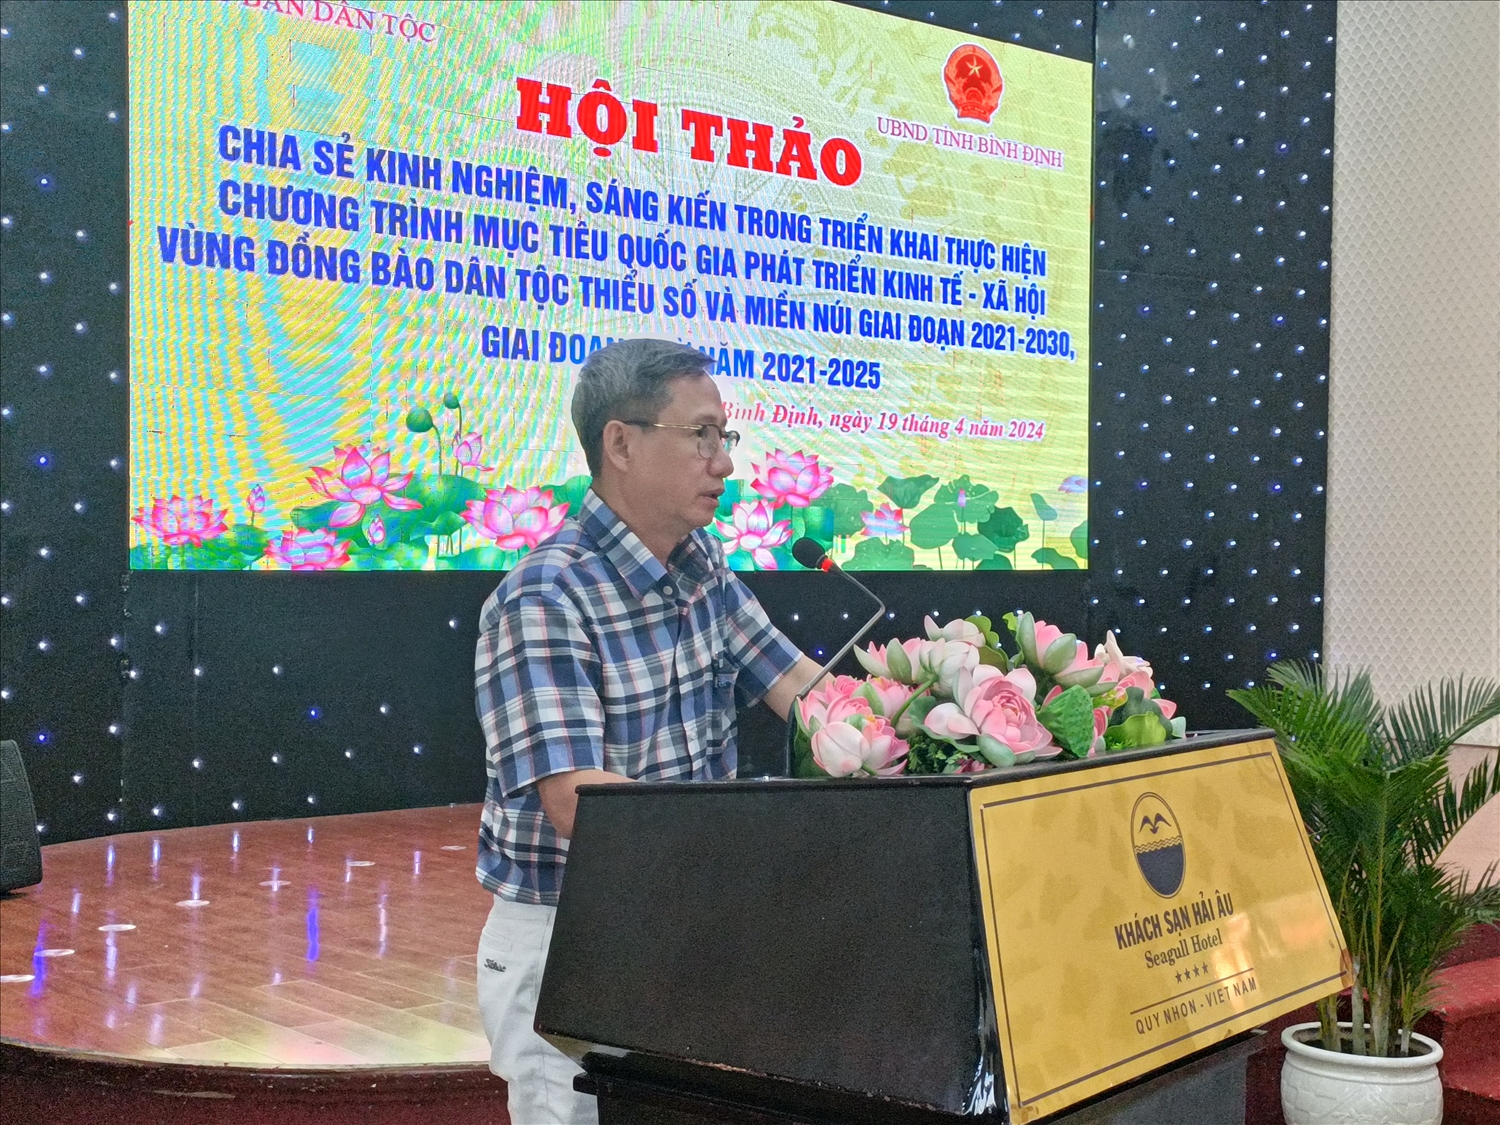 Ông Lê Xuân Hải, Phó Trưởng ban Ban Dân tộc tỉnh Thừa Thiên Huế phát biểu tại Hội thảo